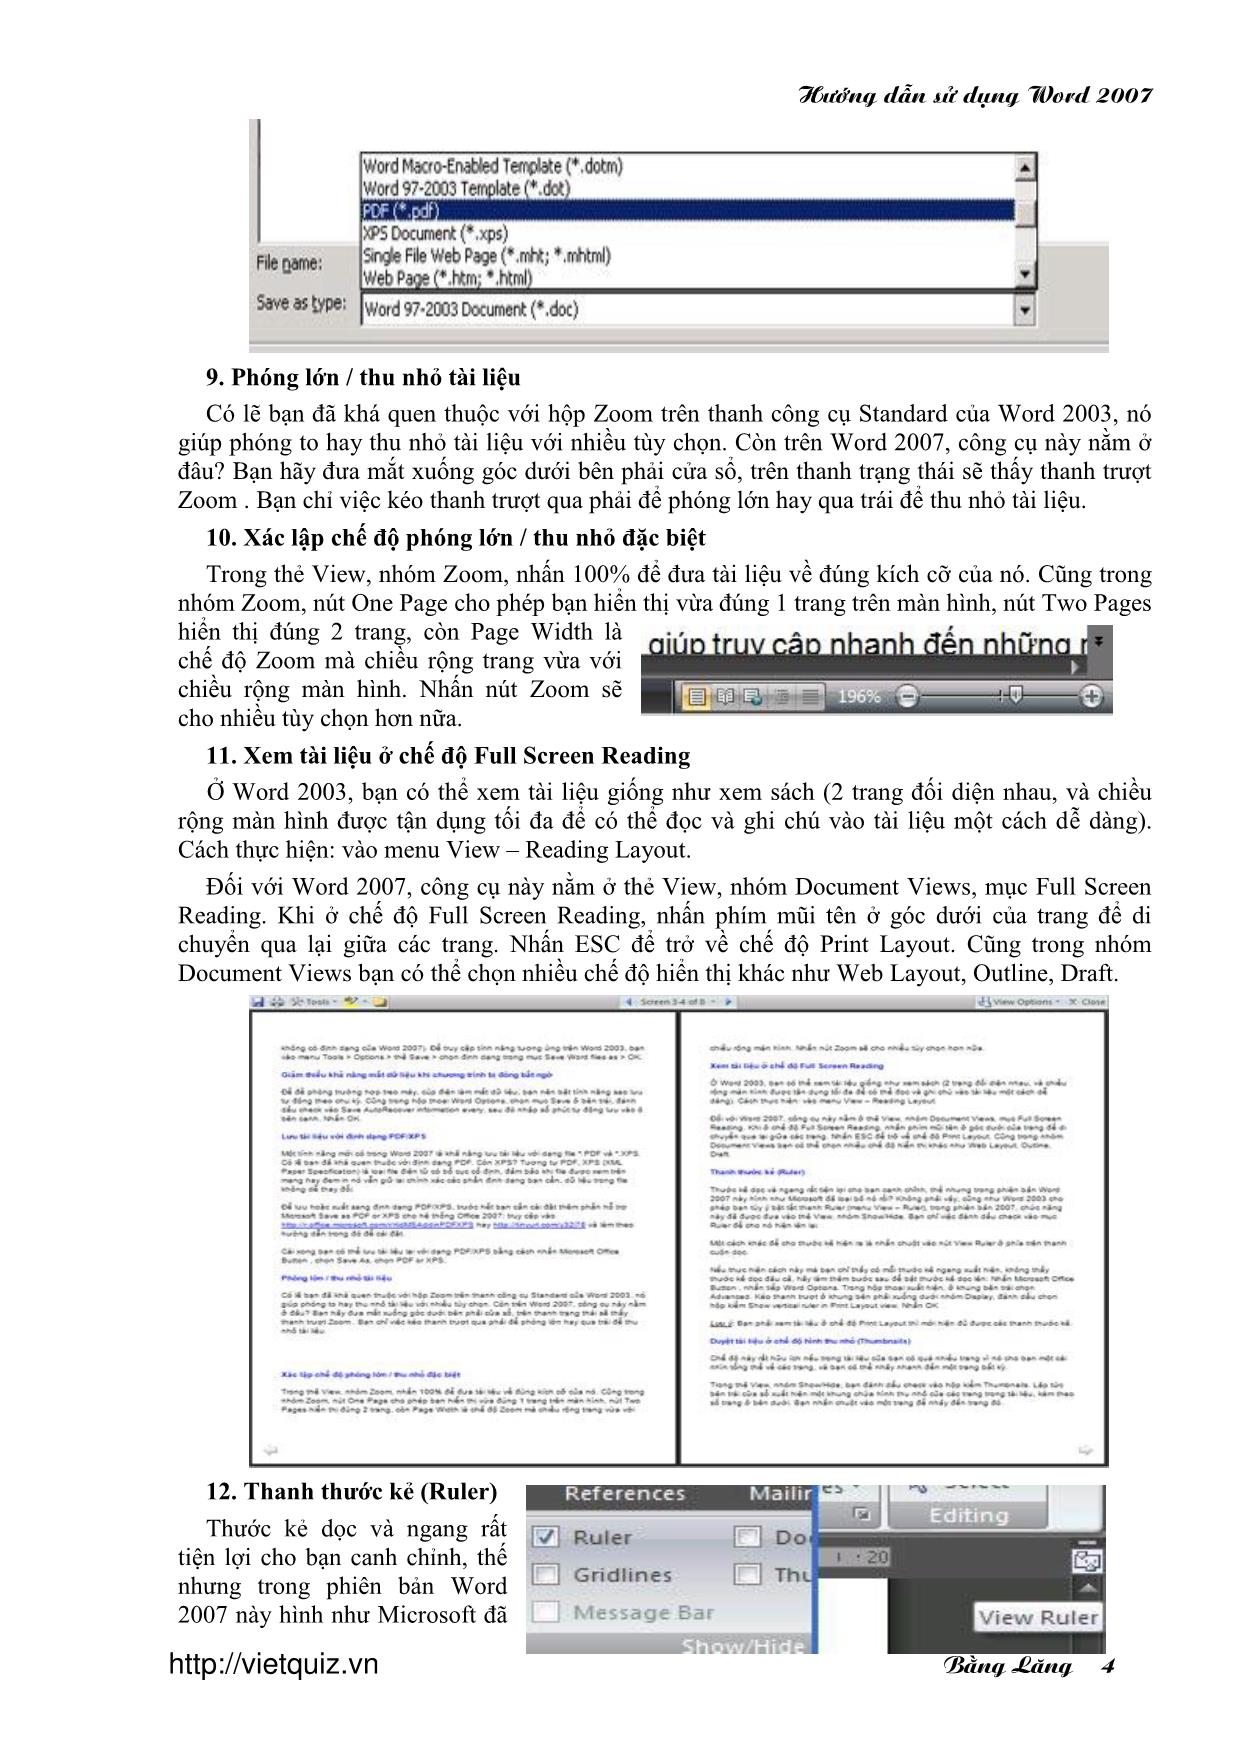 Hướng dẫn sử dụng word 2007 trang 4